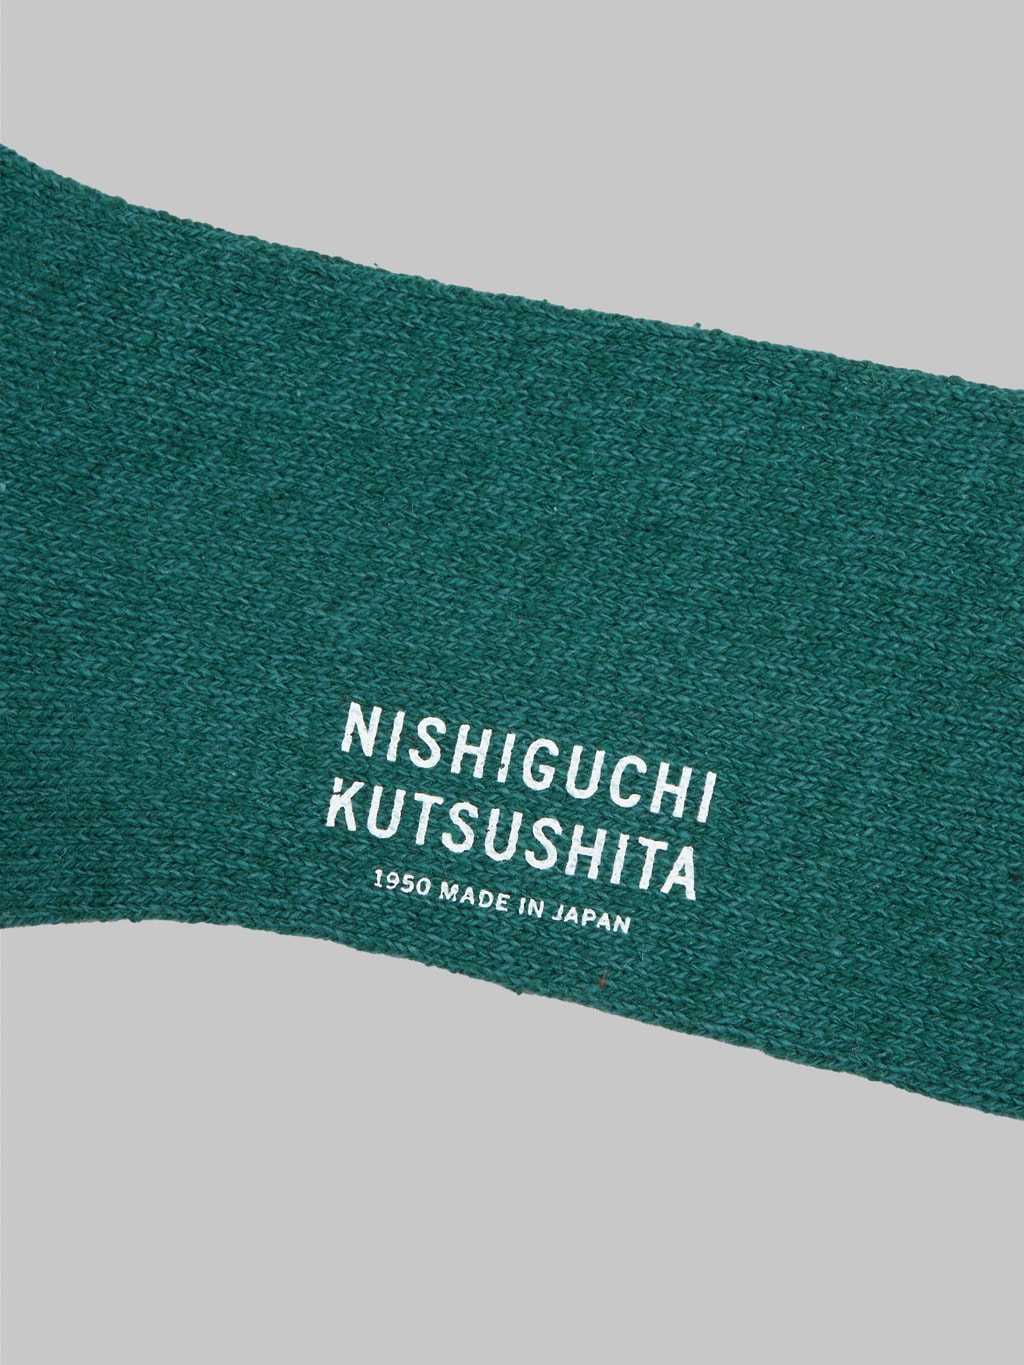 nishiguchi kutsushita silk cotton socks amazon green logo